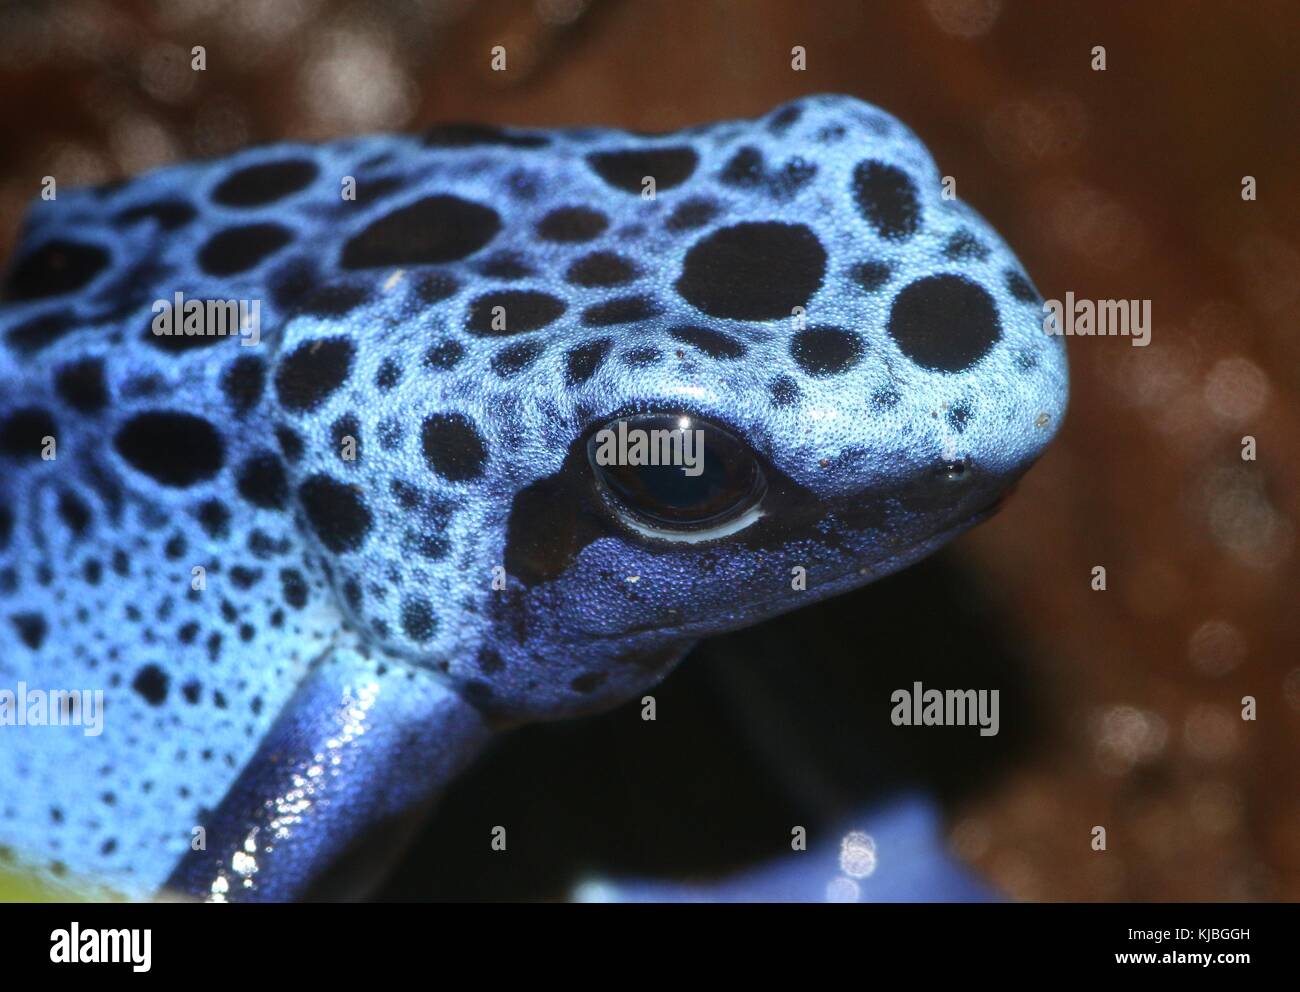 South American Blue poison dart frog / arrow frog (Dentrobates tinctorius azureus) on  a leaf. Stock Photo